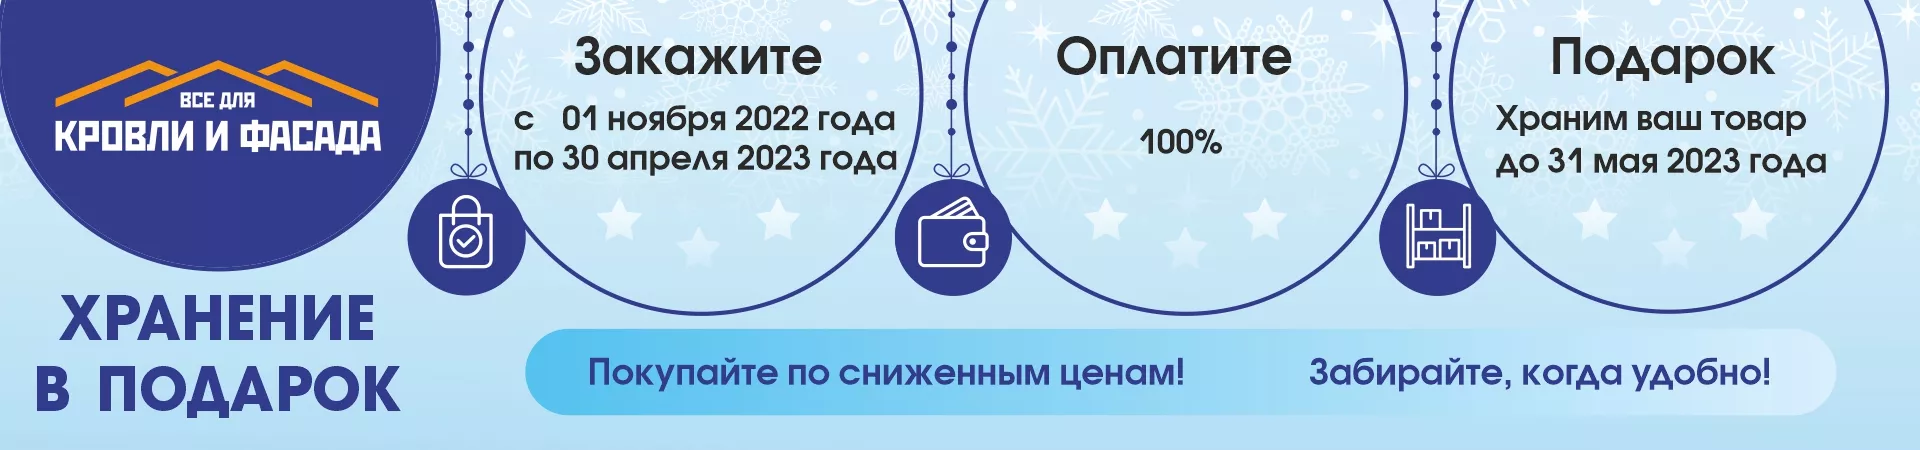 Акция "Зимнее хранение" 2022-2023 в Сыктывкаре